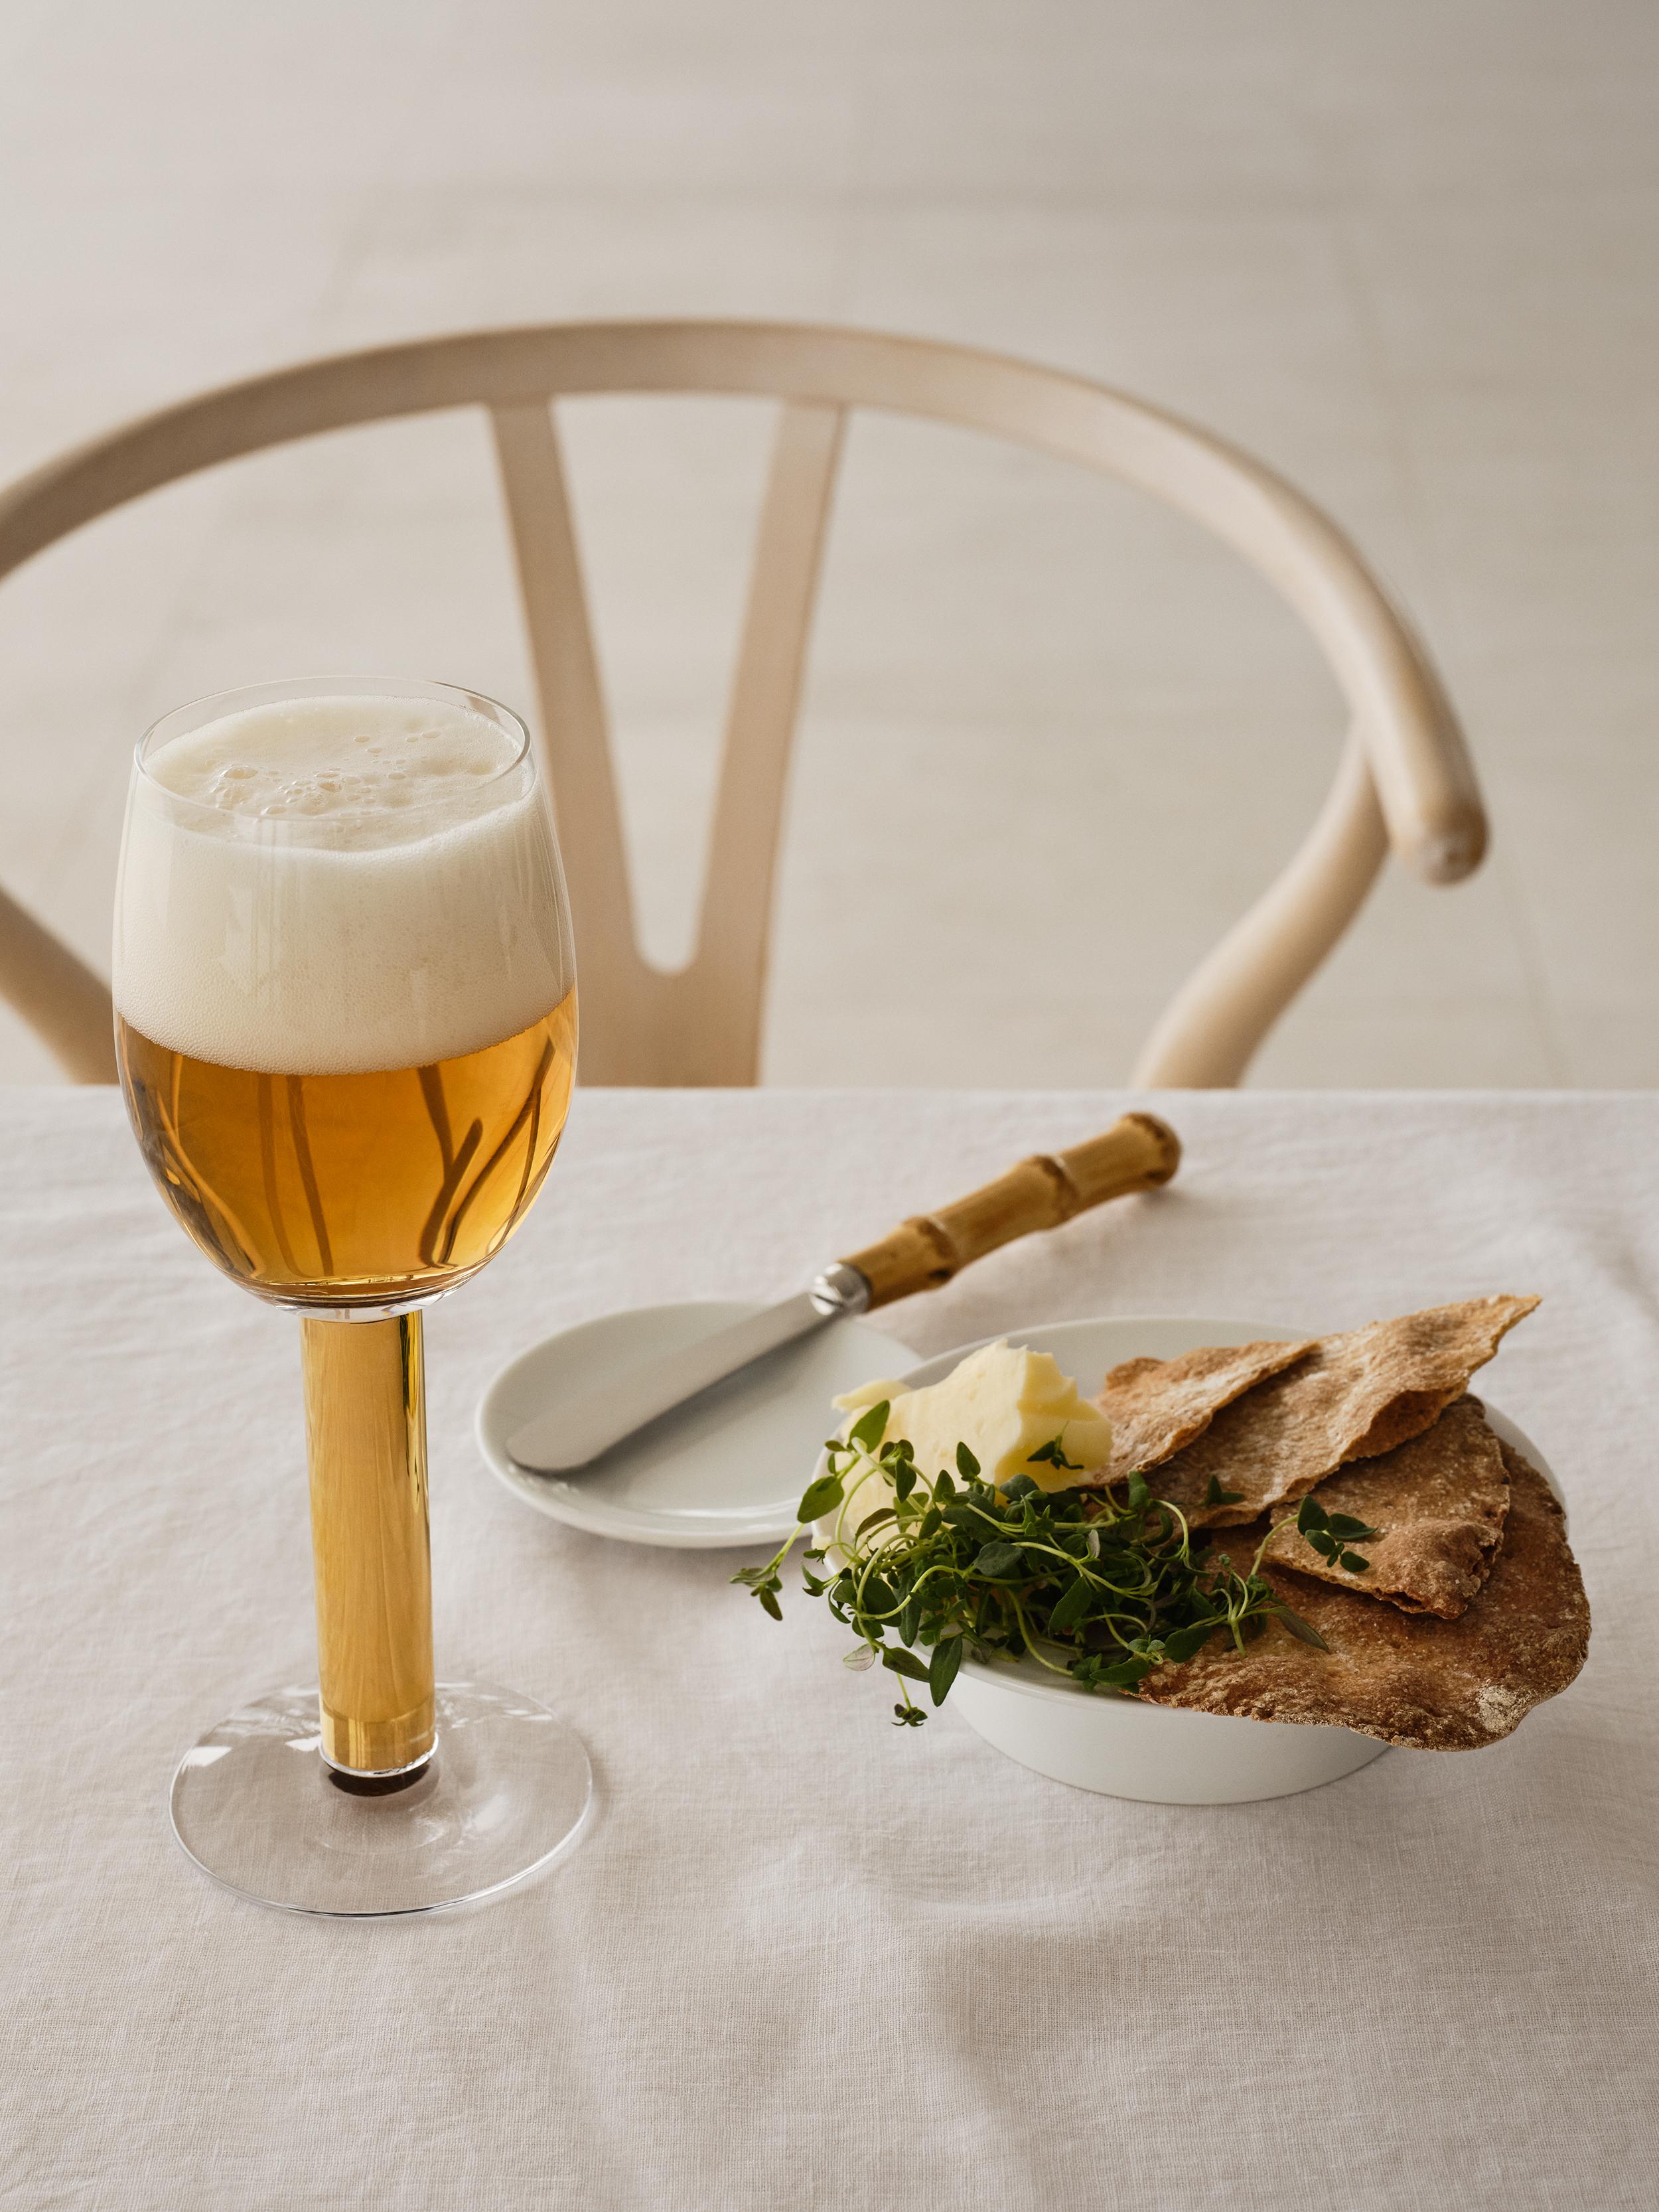 En 1991, Gunnar Cyrén a conçu le verre à bière Nobel pour le 90e anniversaire du prix Nobel. Cet élégant verre, d'une contenance de 12,5 oz, est fabriqué en cristal avec des détails peints à la main en or véritable 21 carats. Aujourd'hui encore, les